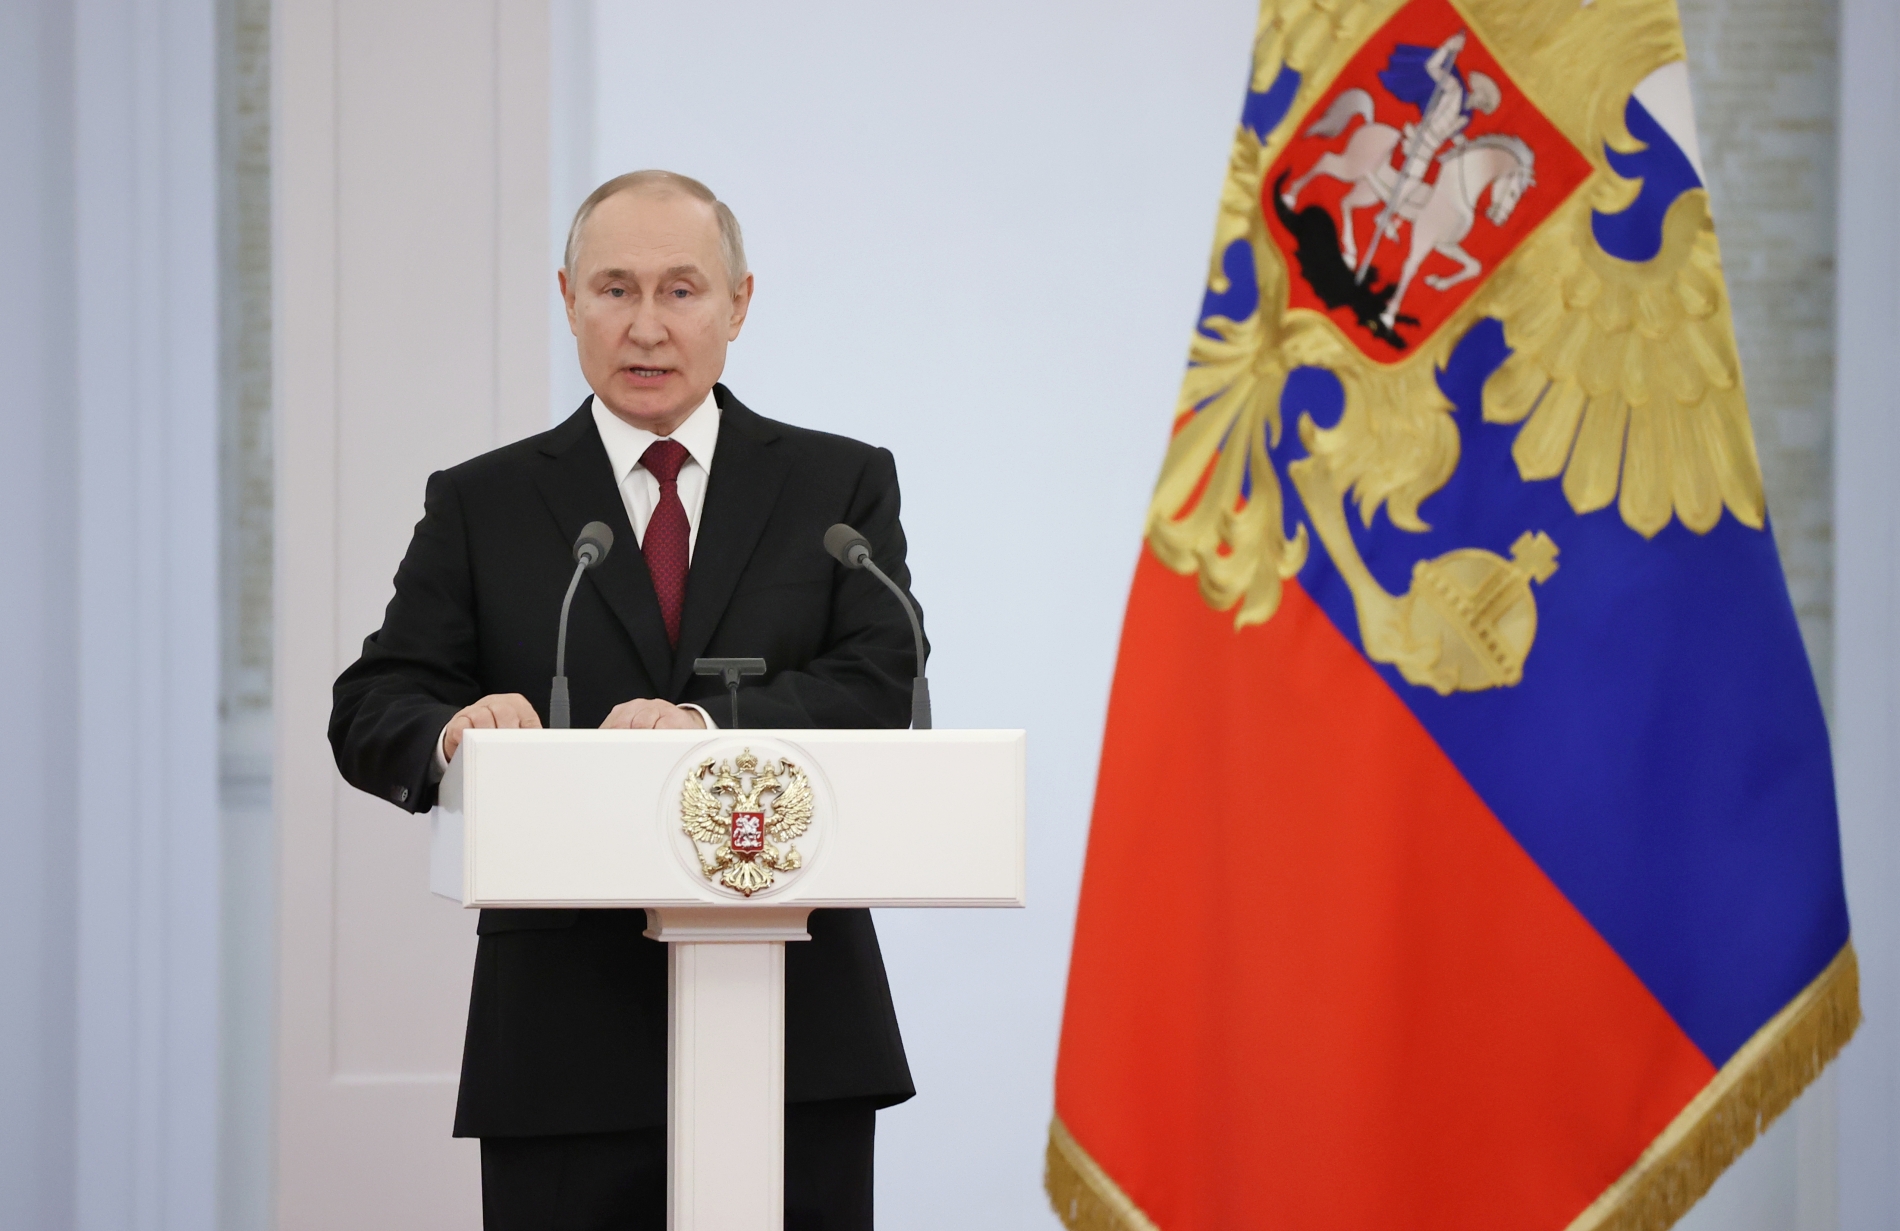 Владимир Путин: в основе героизма – любовь к Родине